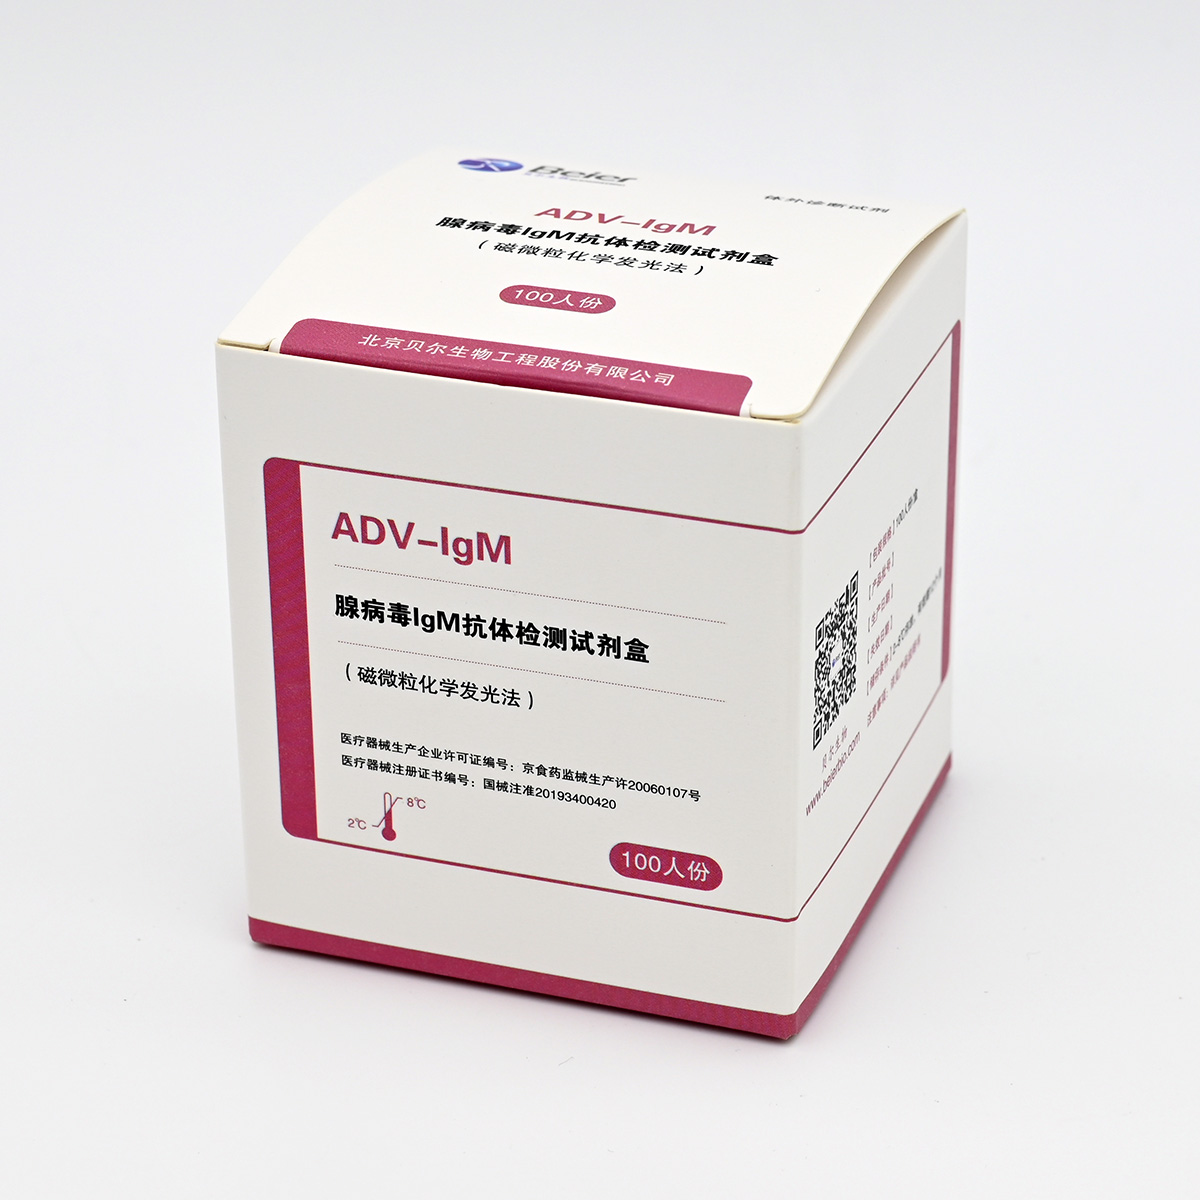 【贝尔】腺病毒IgM抗体检测试剂盒(磁微粒化学发光法)-云医购